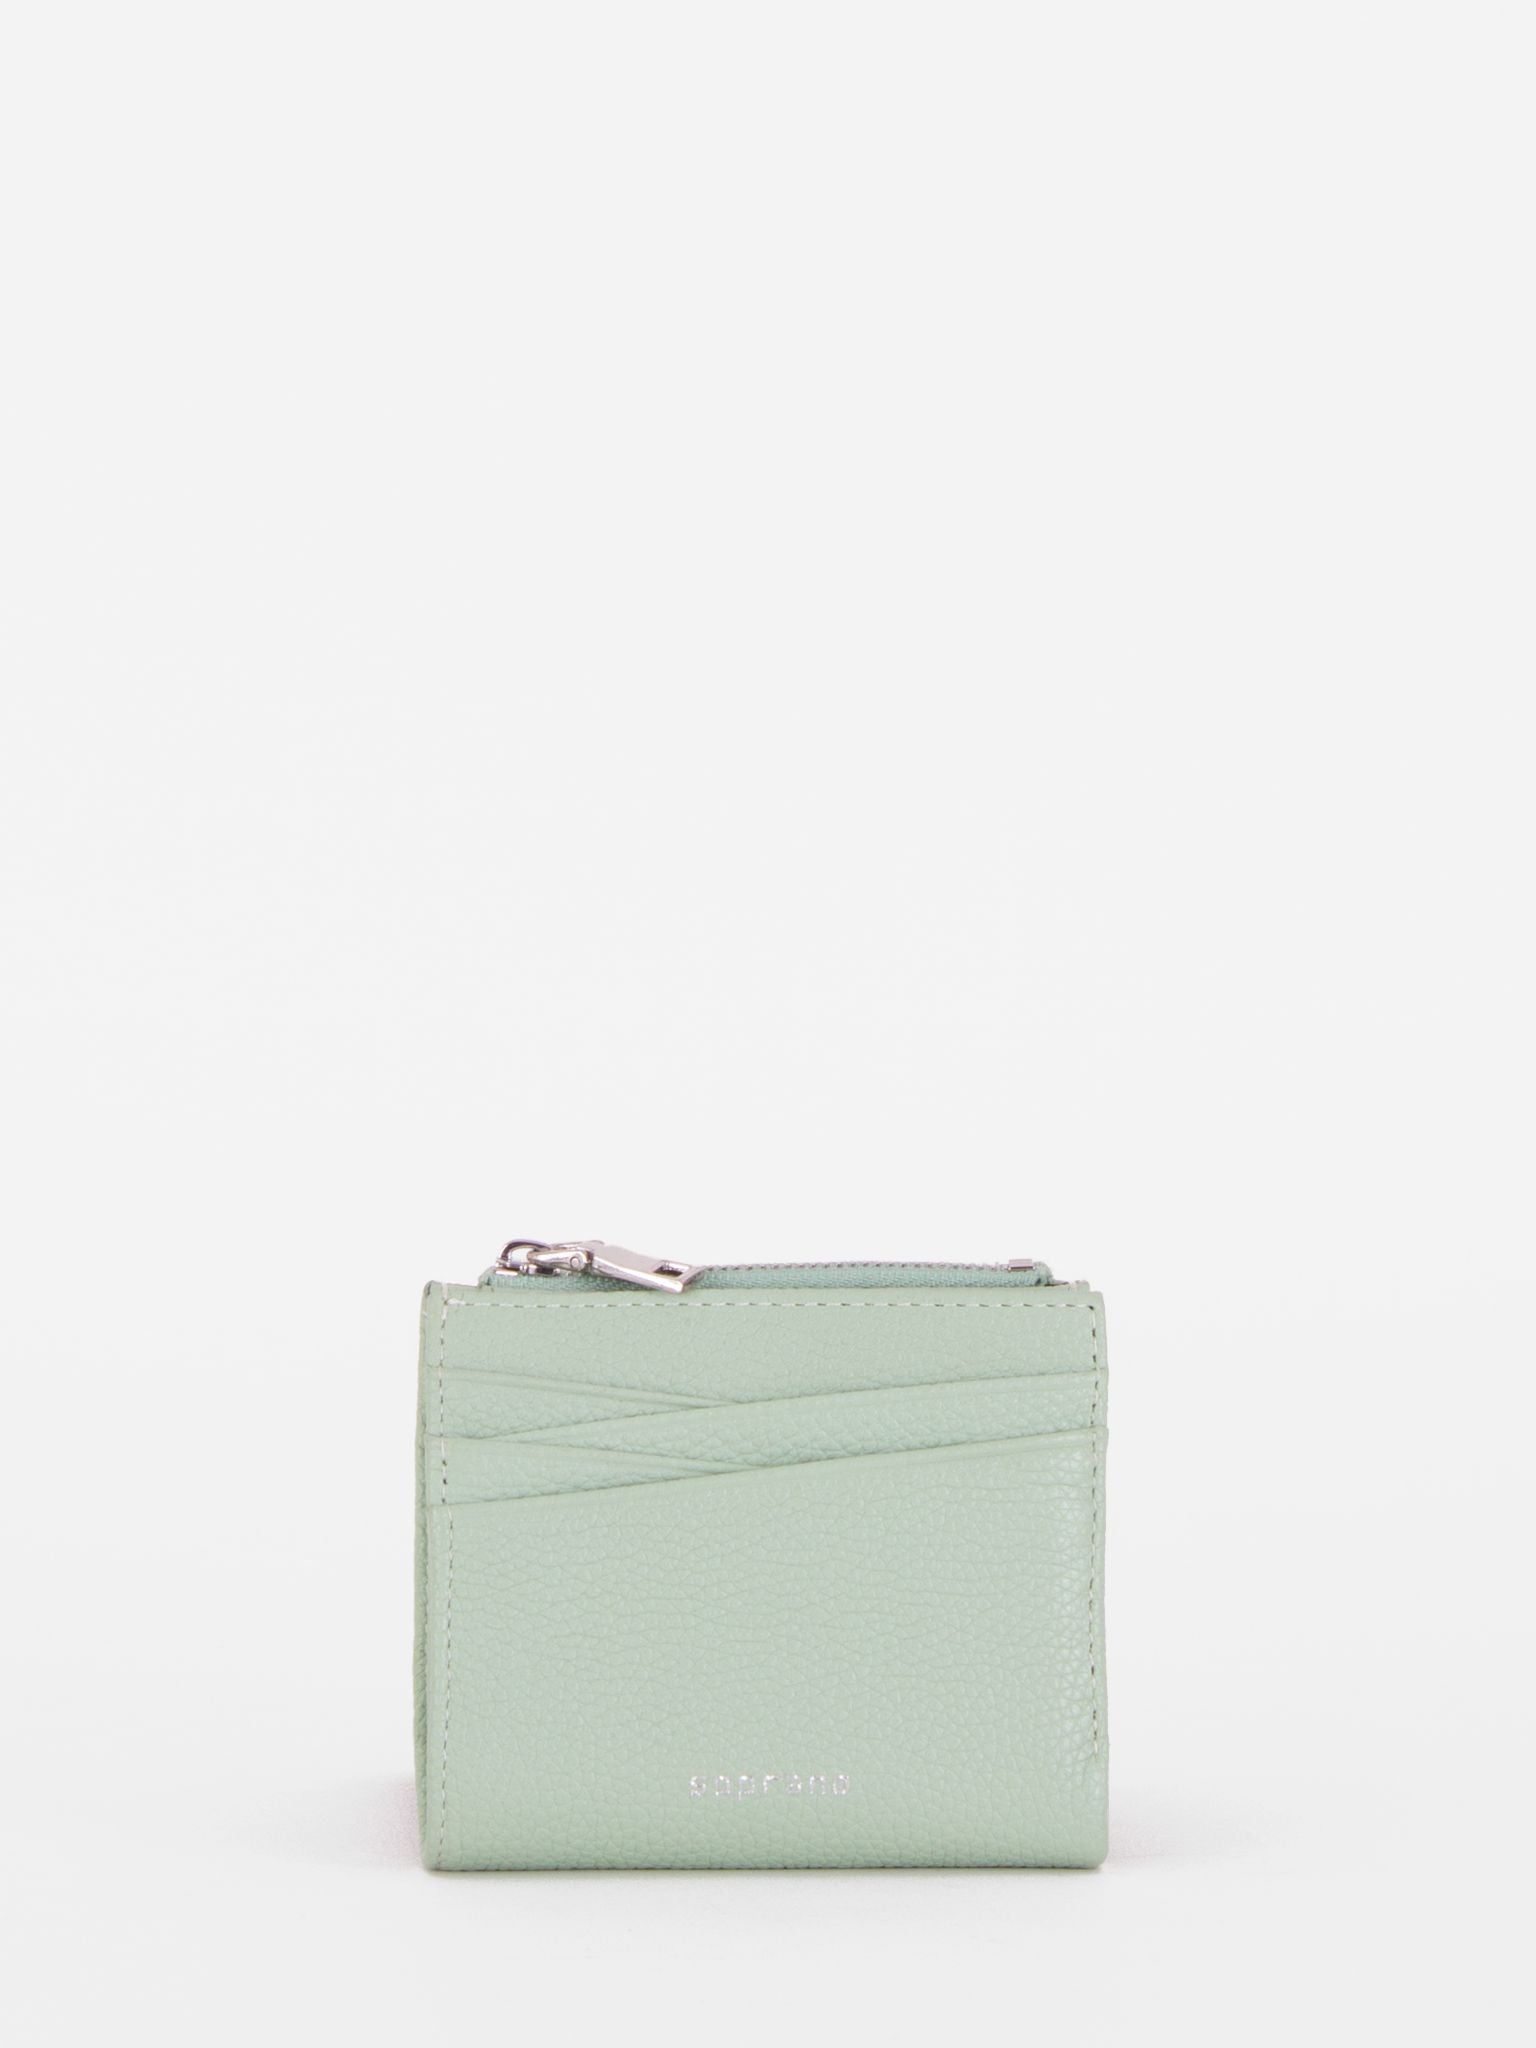 Jean Small Wallet - Celadon Green